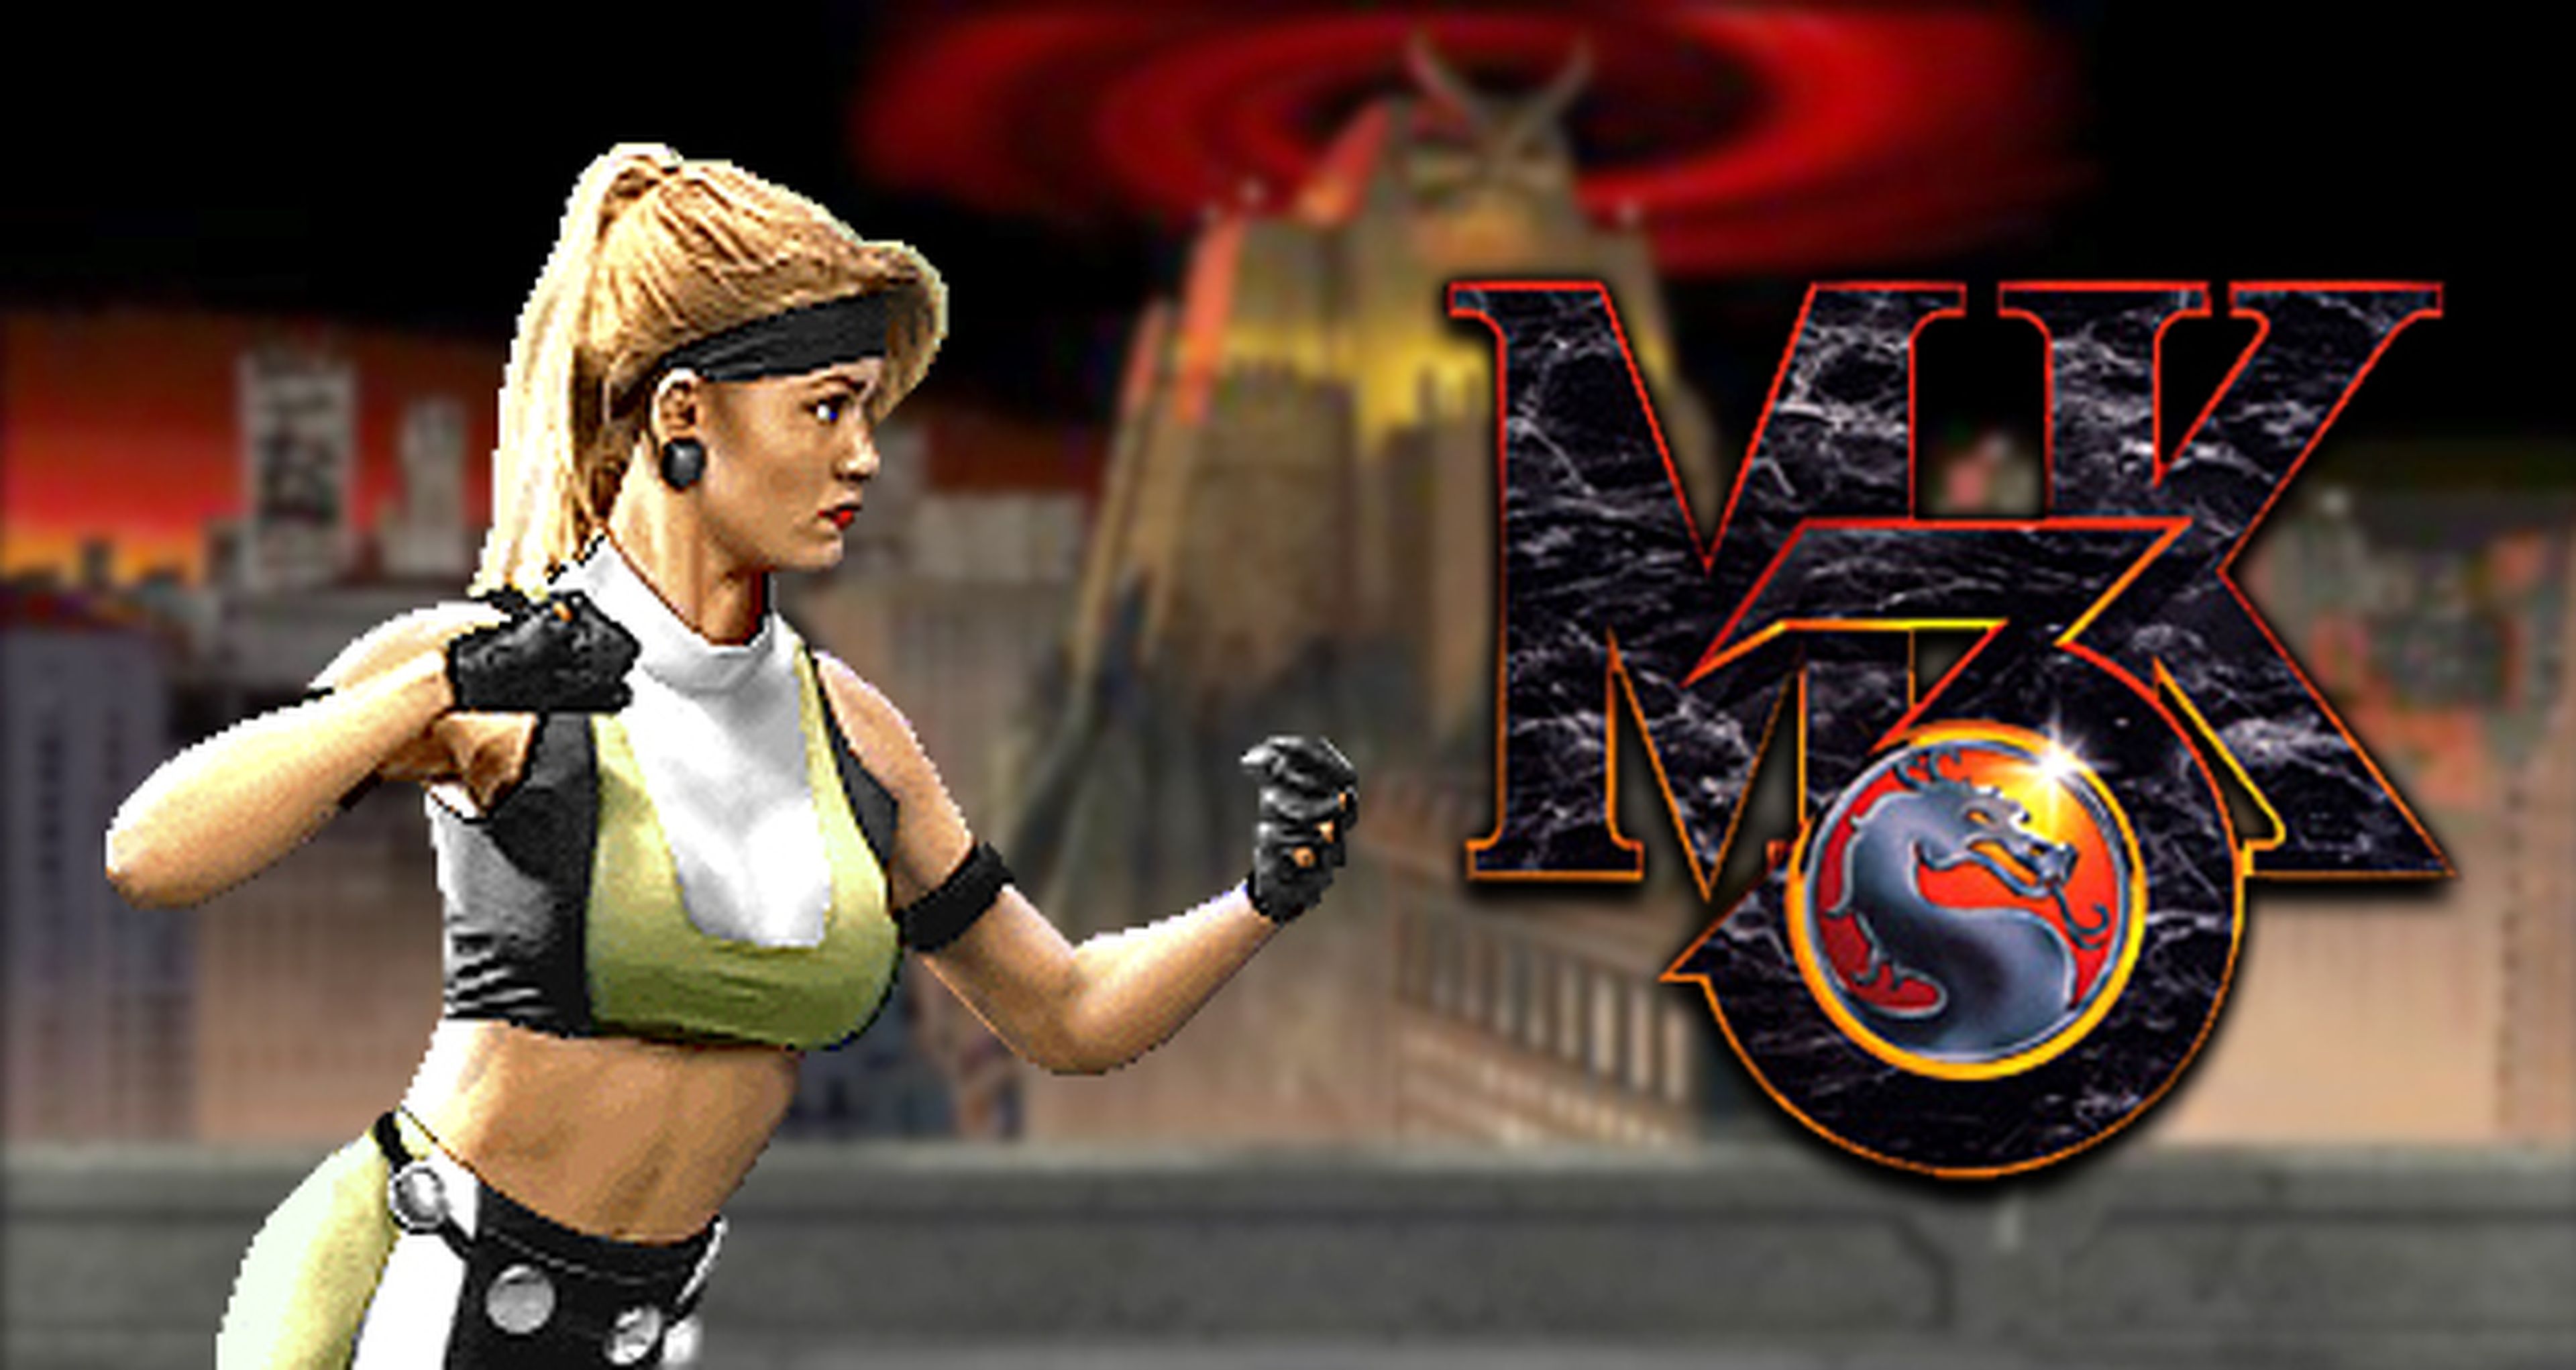 Hobby Consolas, hace 20 años: Mortal Kombat 3